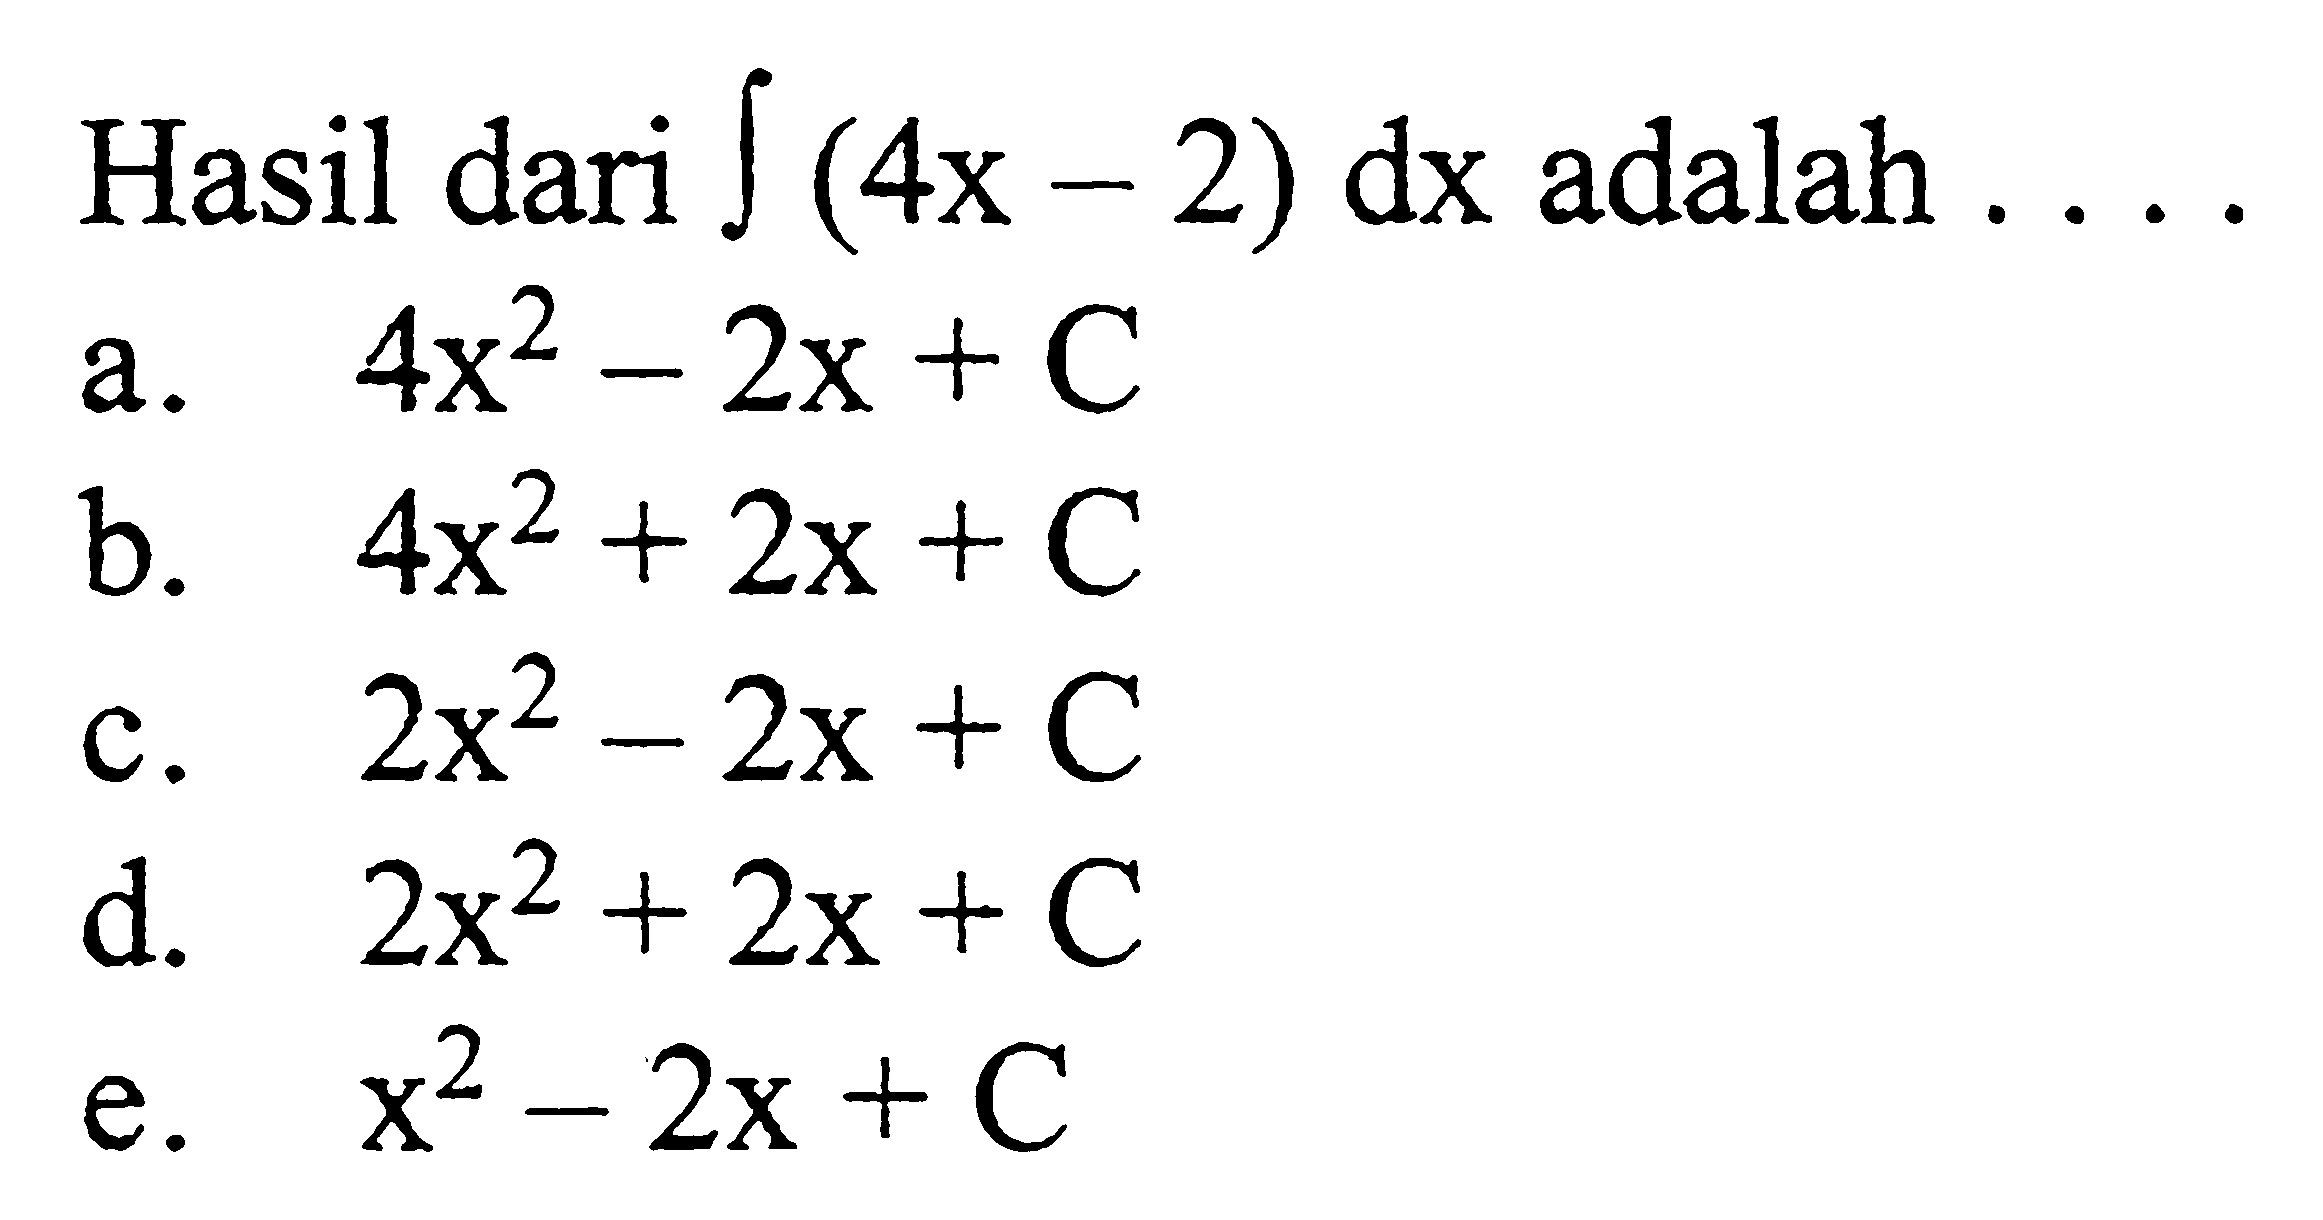 Hasil dari integral (4x-2) dx adalah  ... 